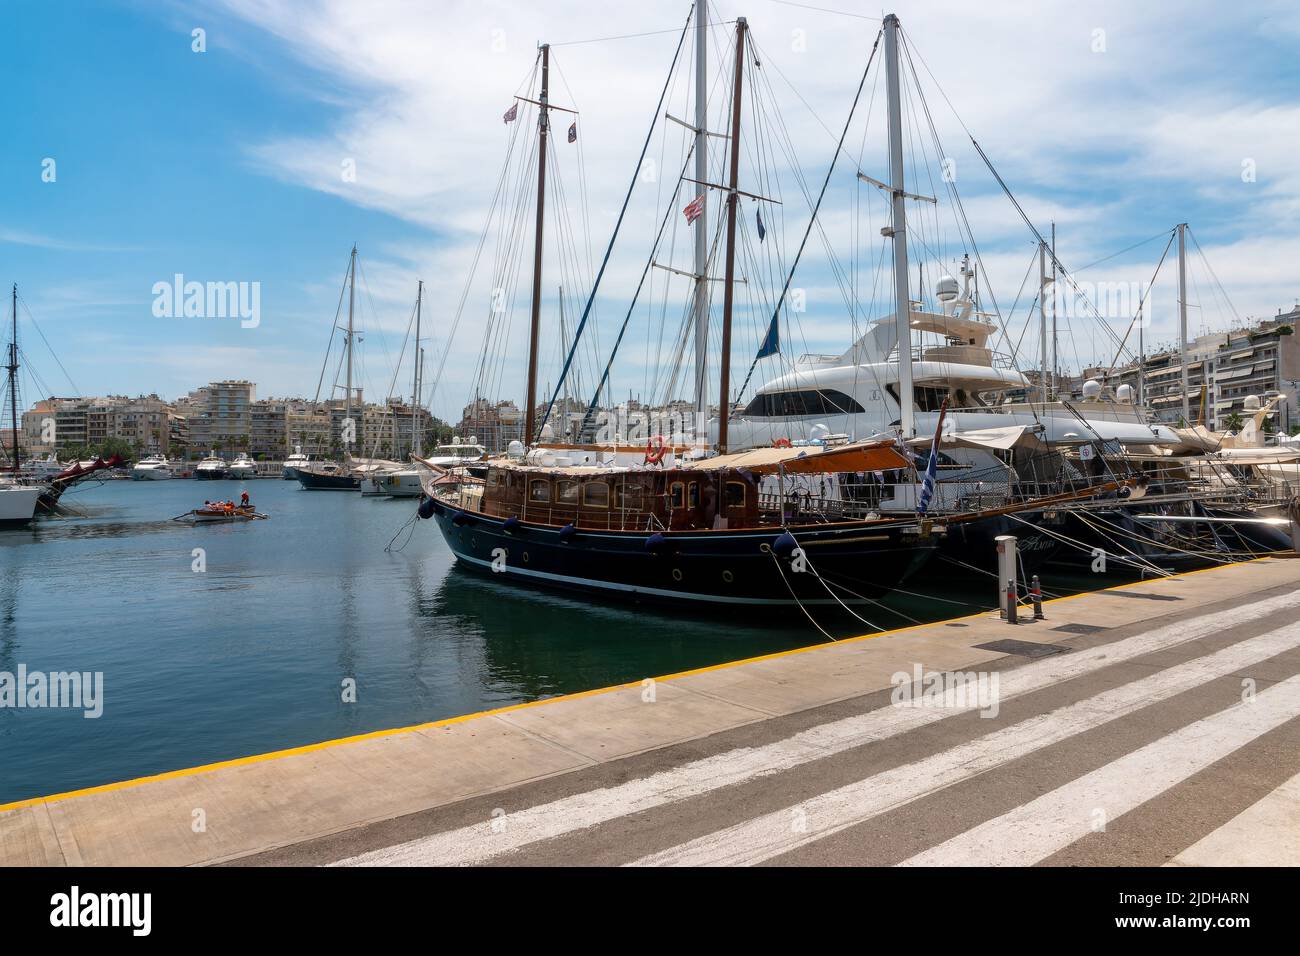 The coastal town and harbour of Piraeus, Athens, Greece Stock Photo